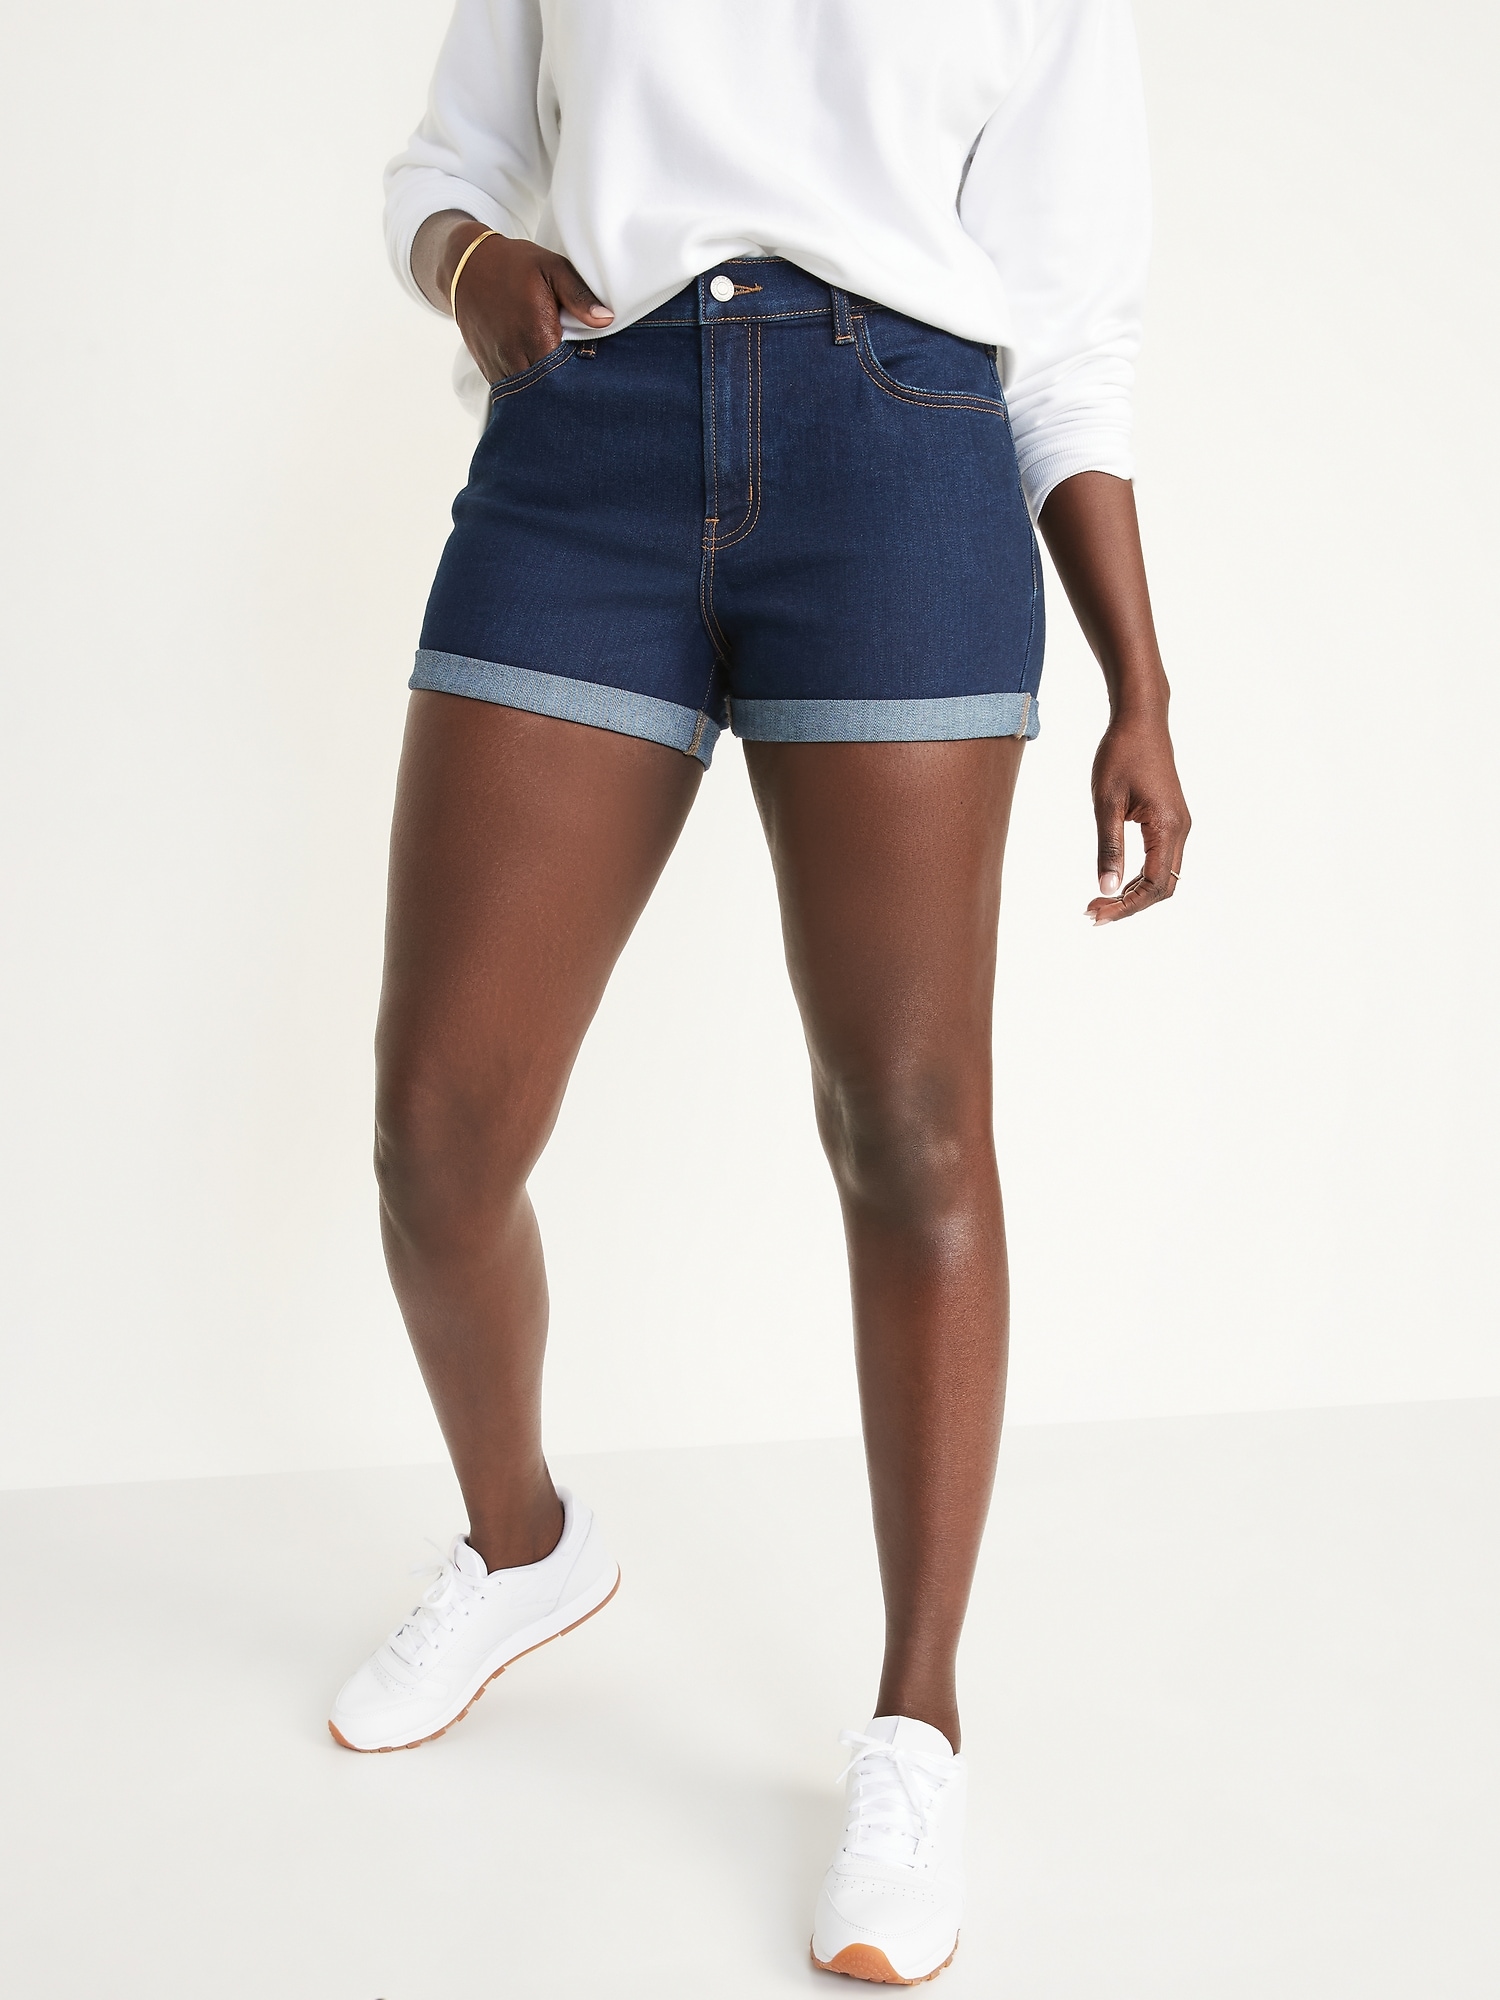 Women's 3 Inch Shorts